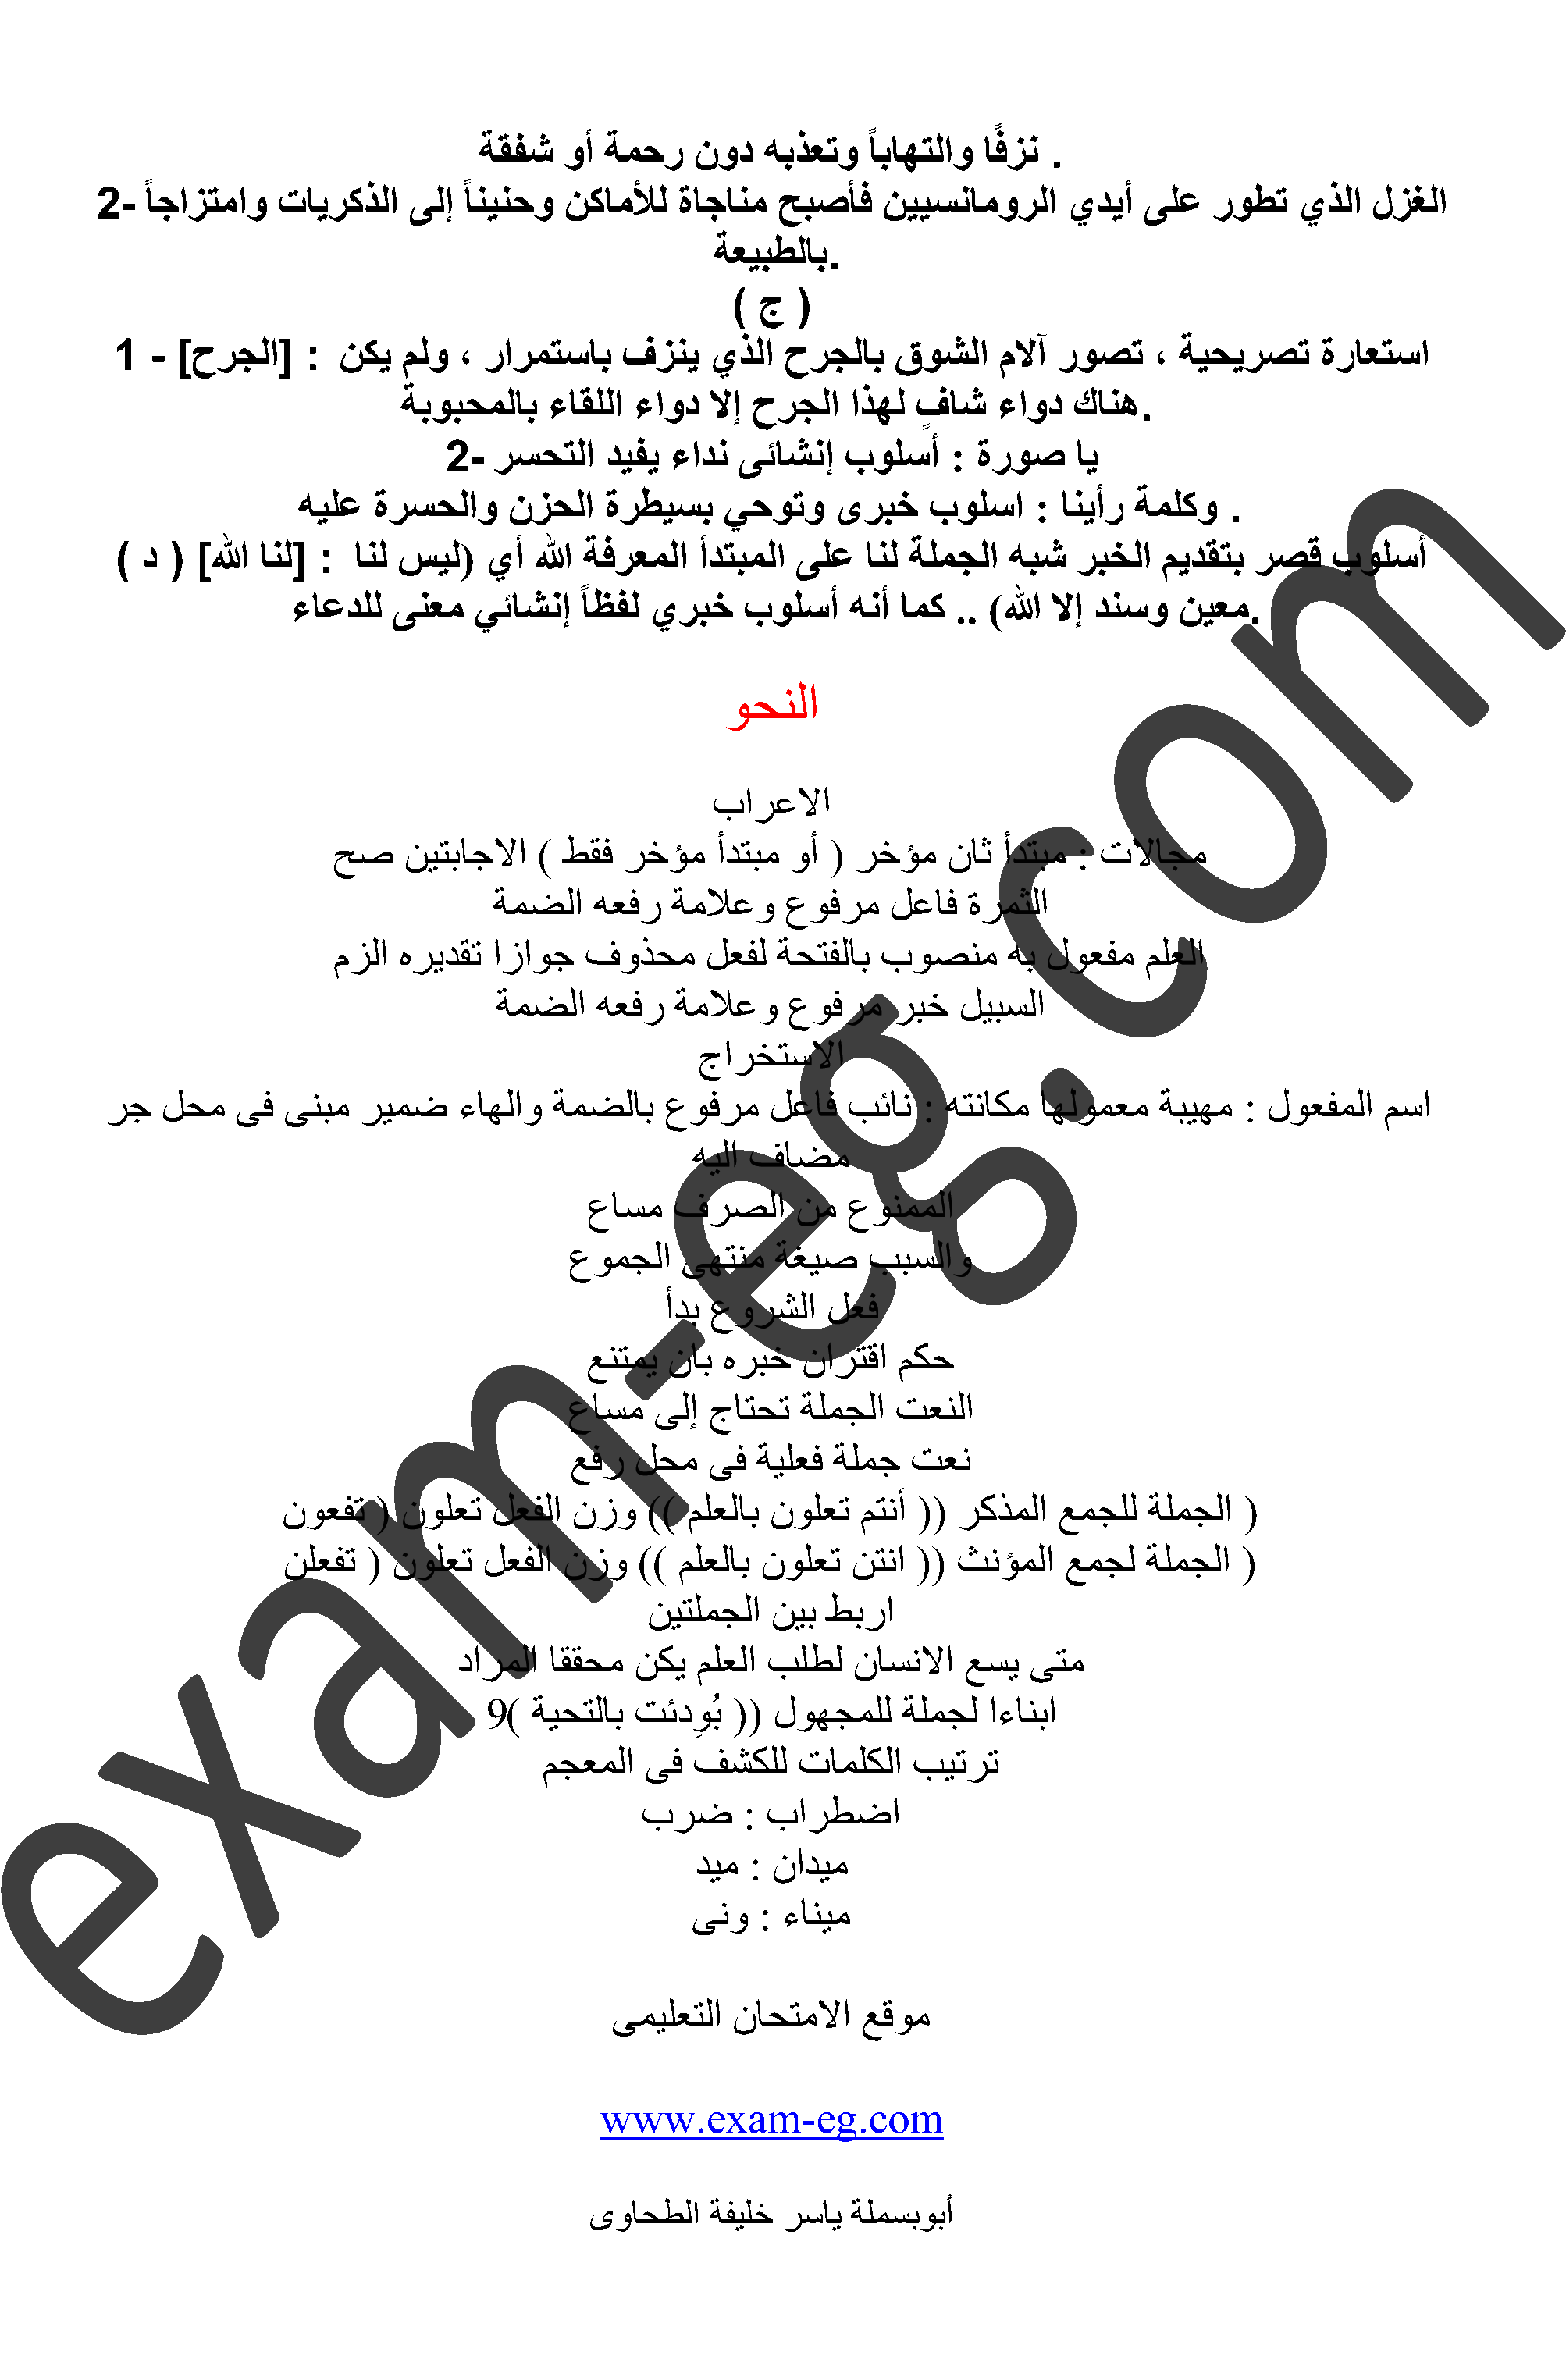 exam-eg.com_1370699008256.gif